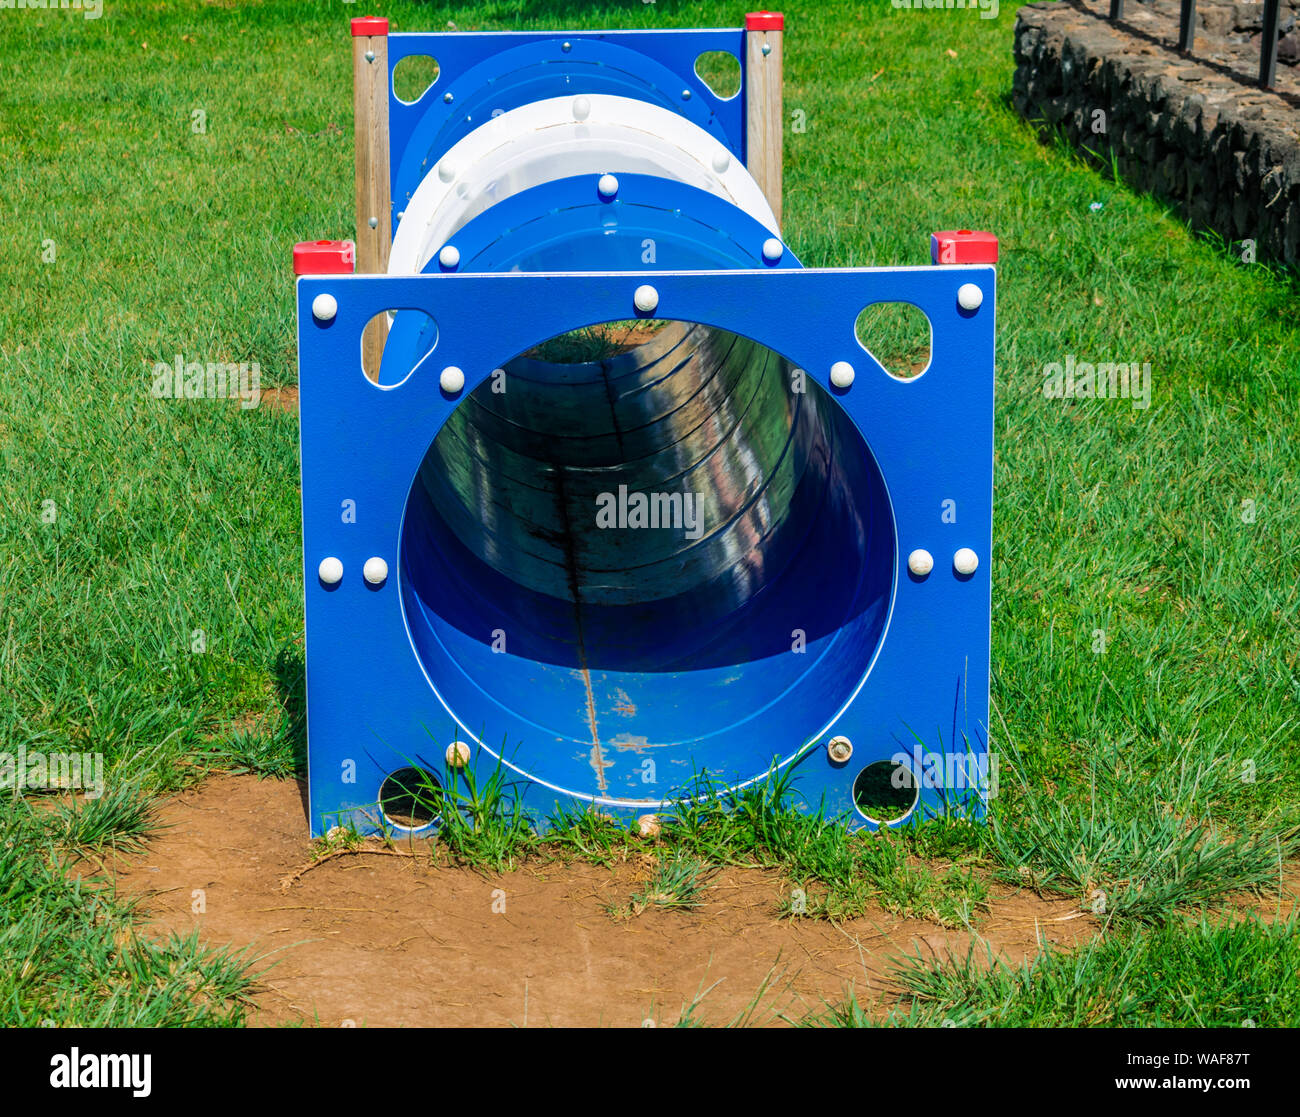 Circuito di agility tunnel blu per cani con erba e giornata di sole Foto Stock